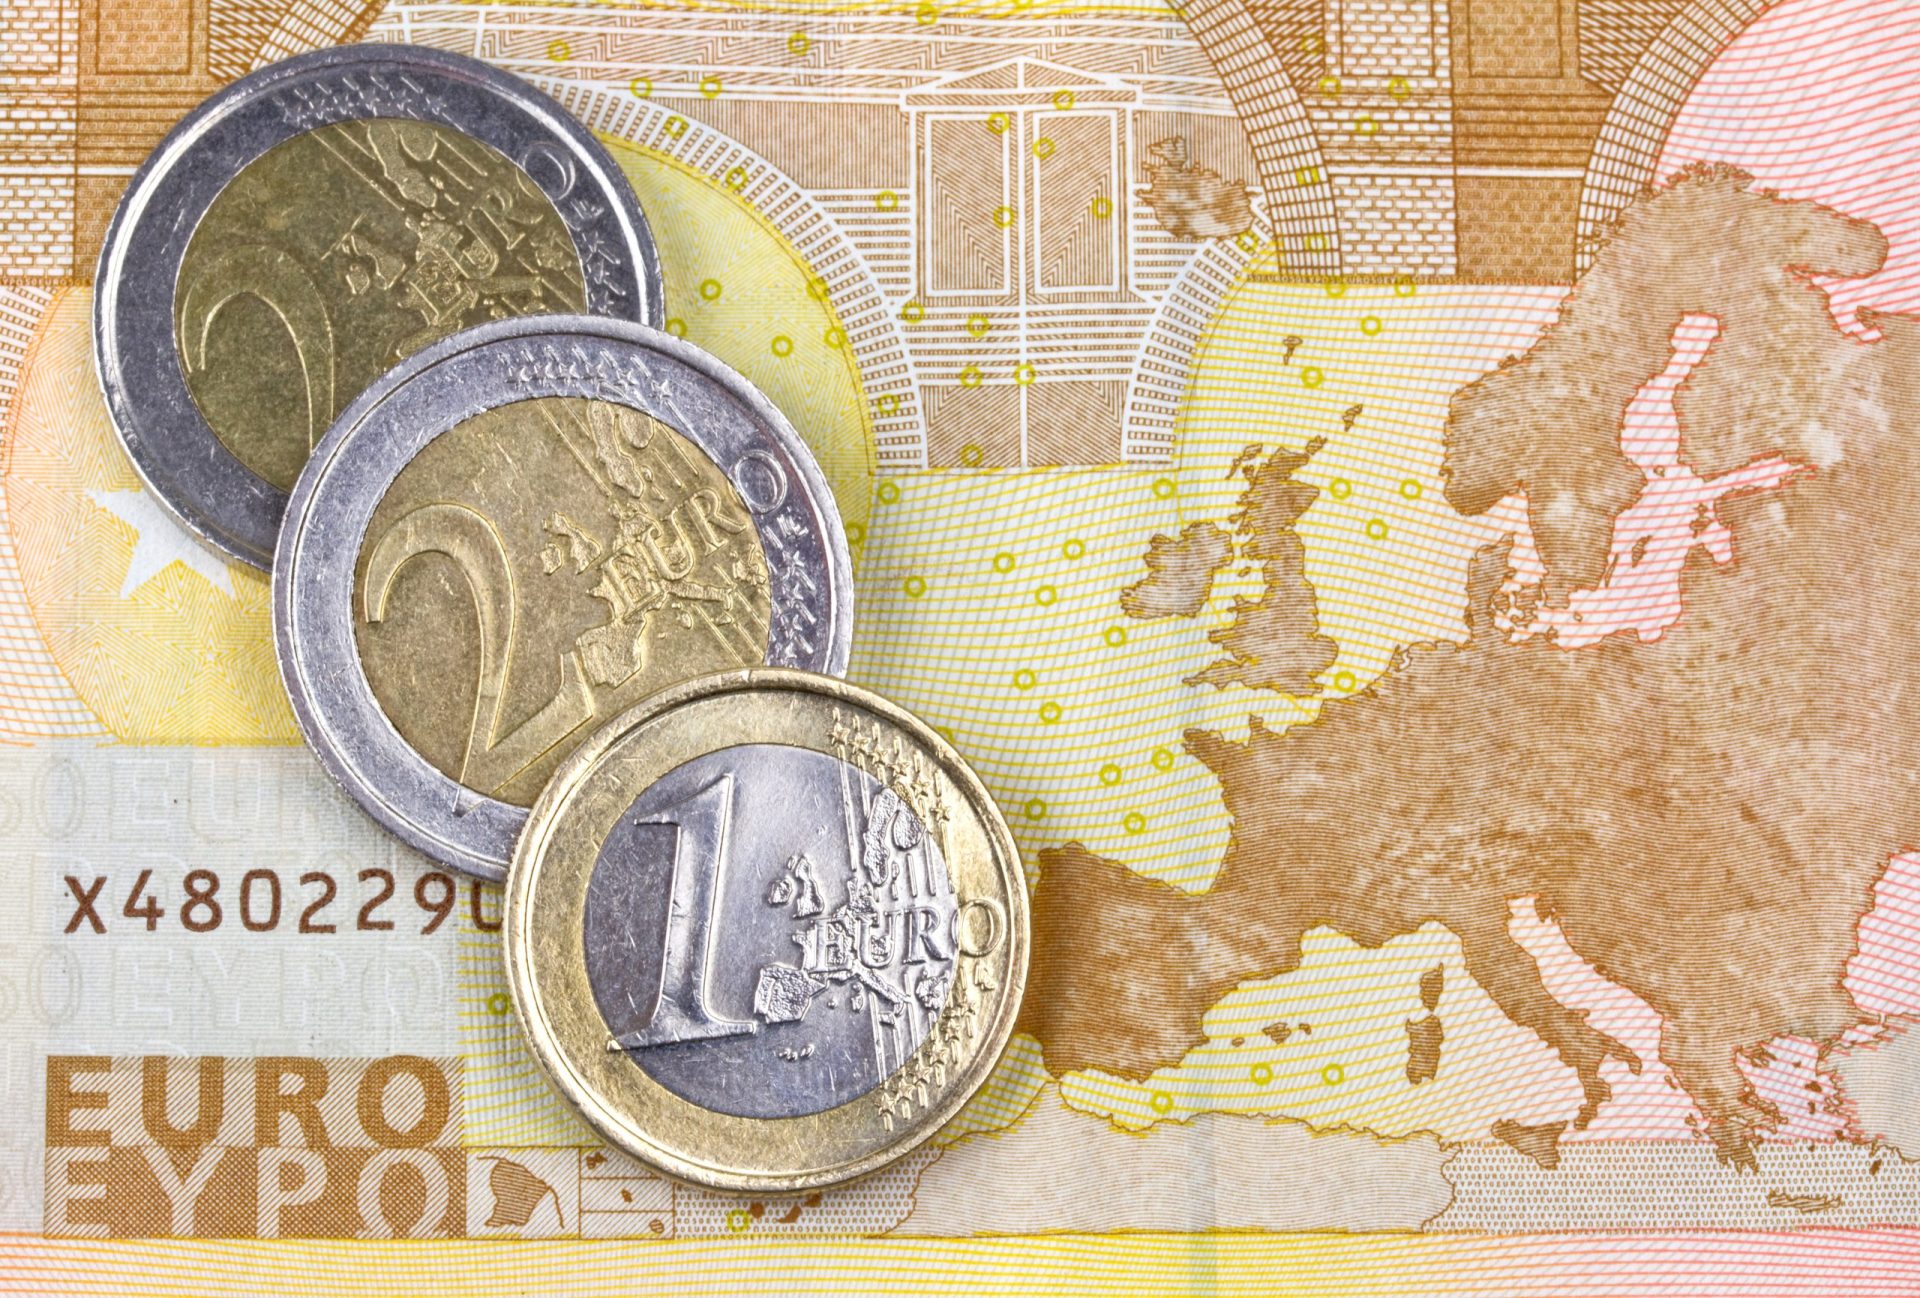 Portugal com a taxa mais baixa da zona euro